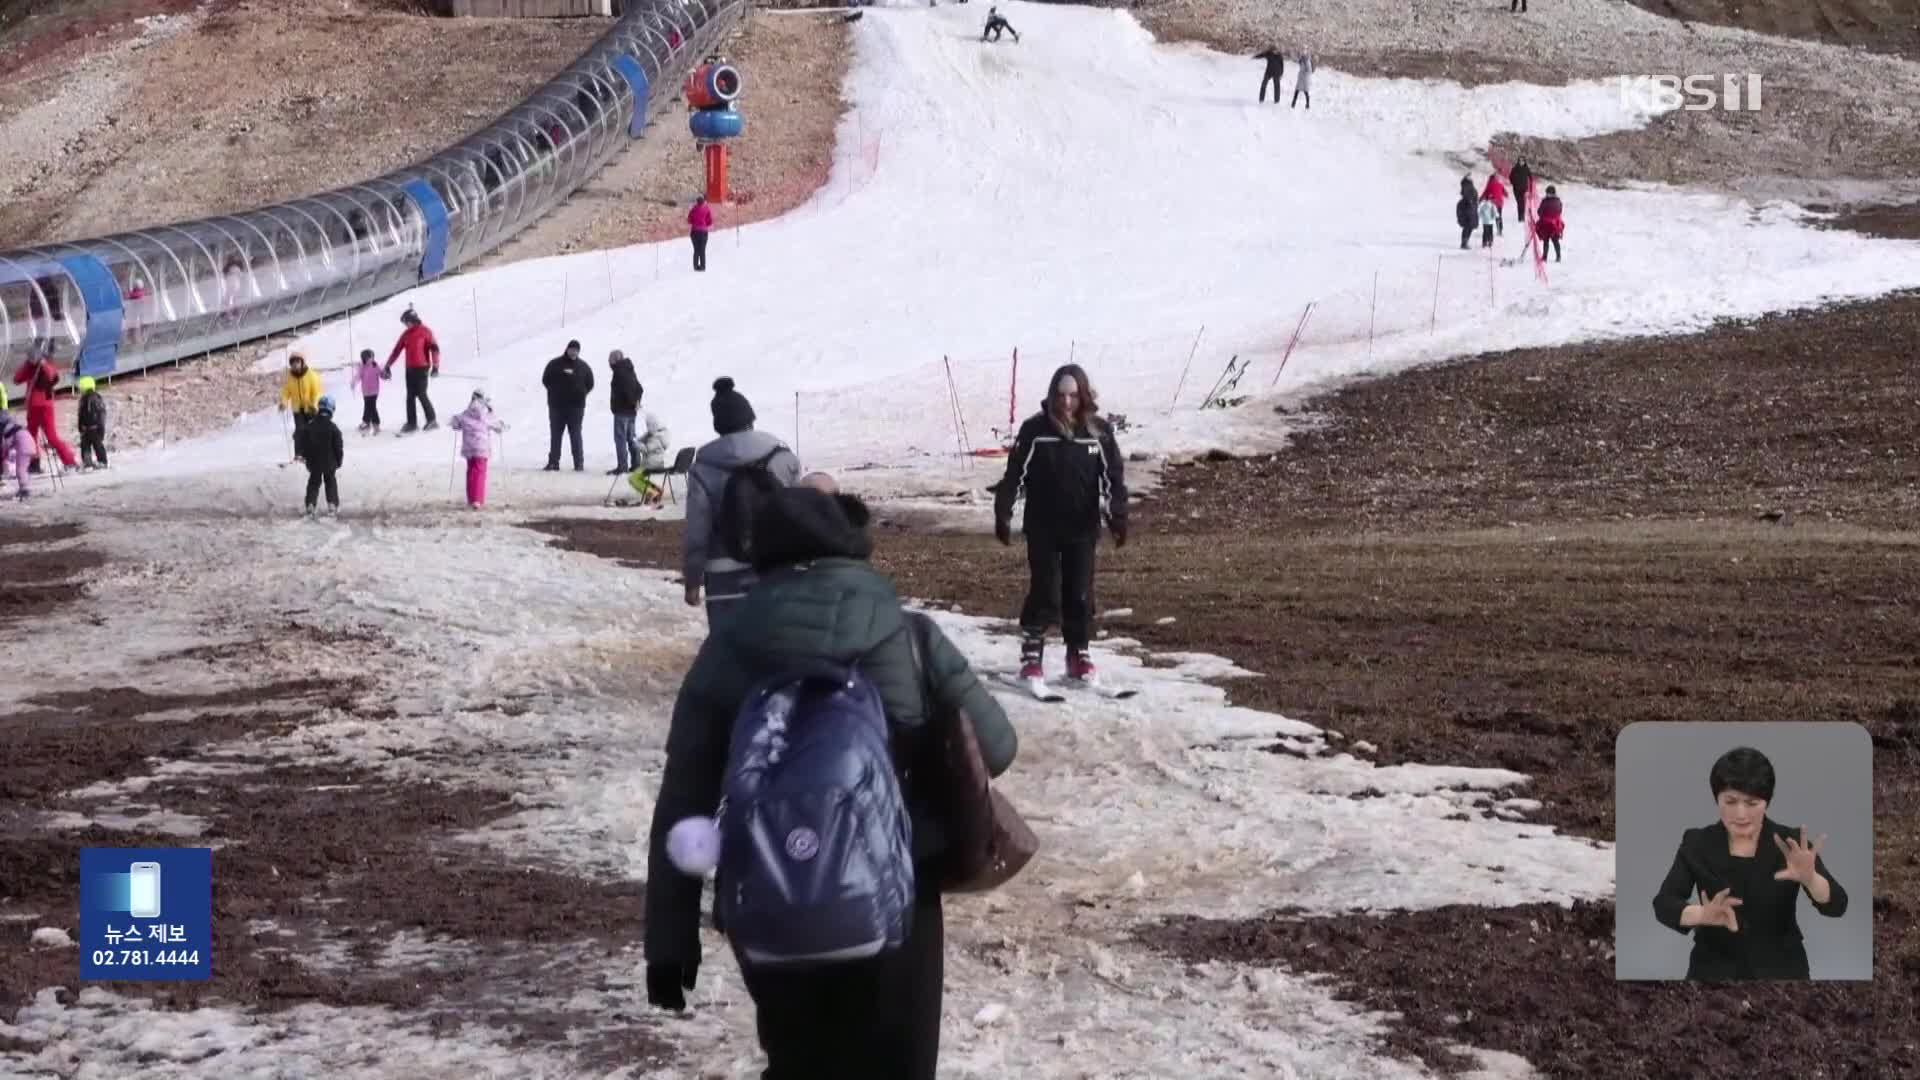 동계올림픽 열렸던 곳인데…“진흙탕 된 스키장”